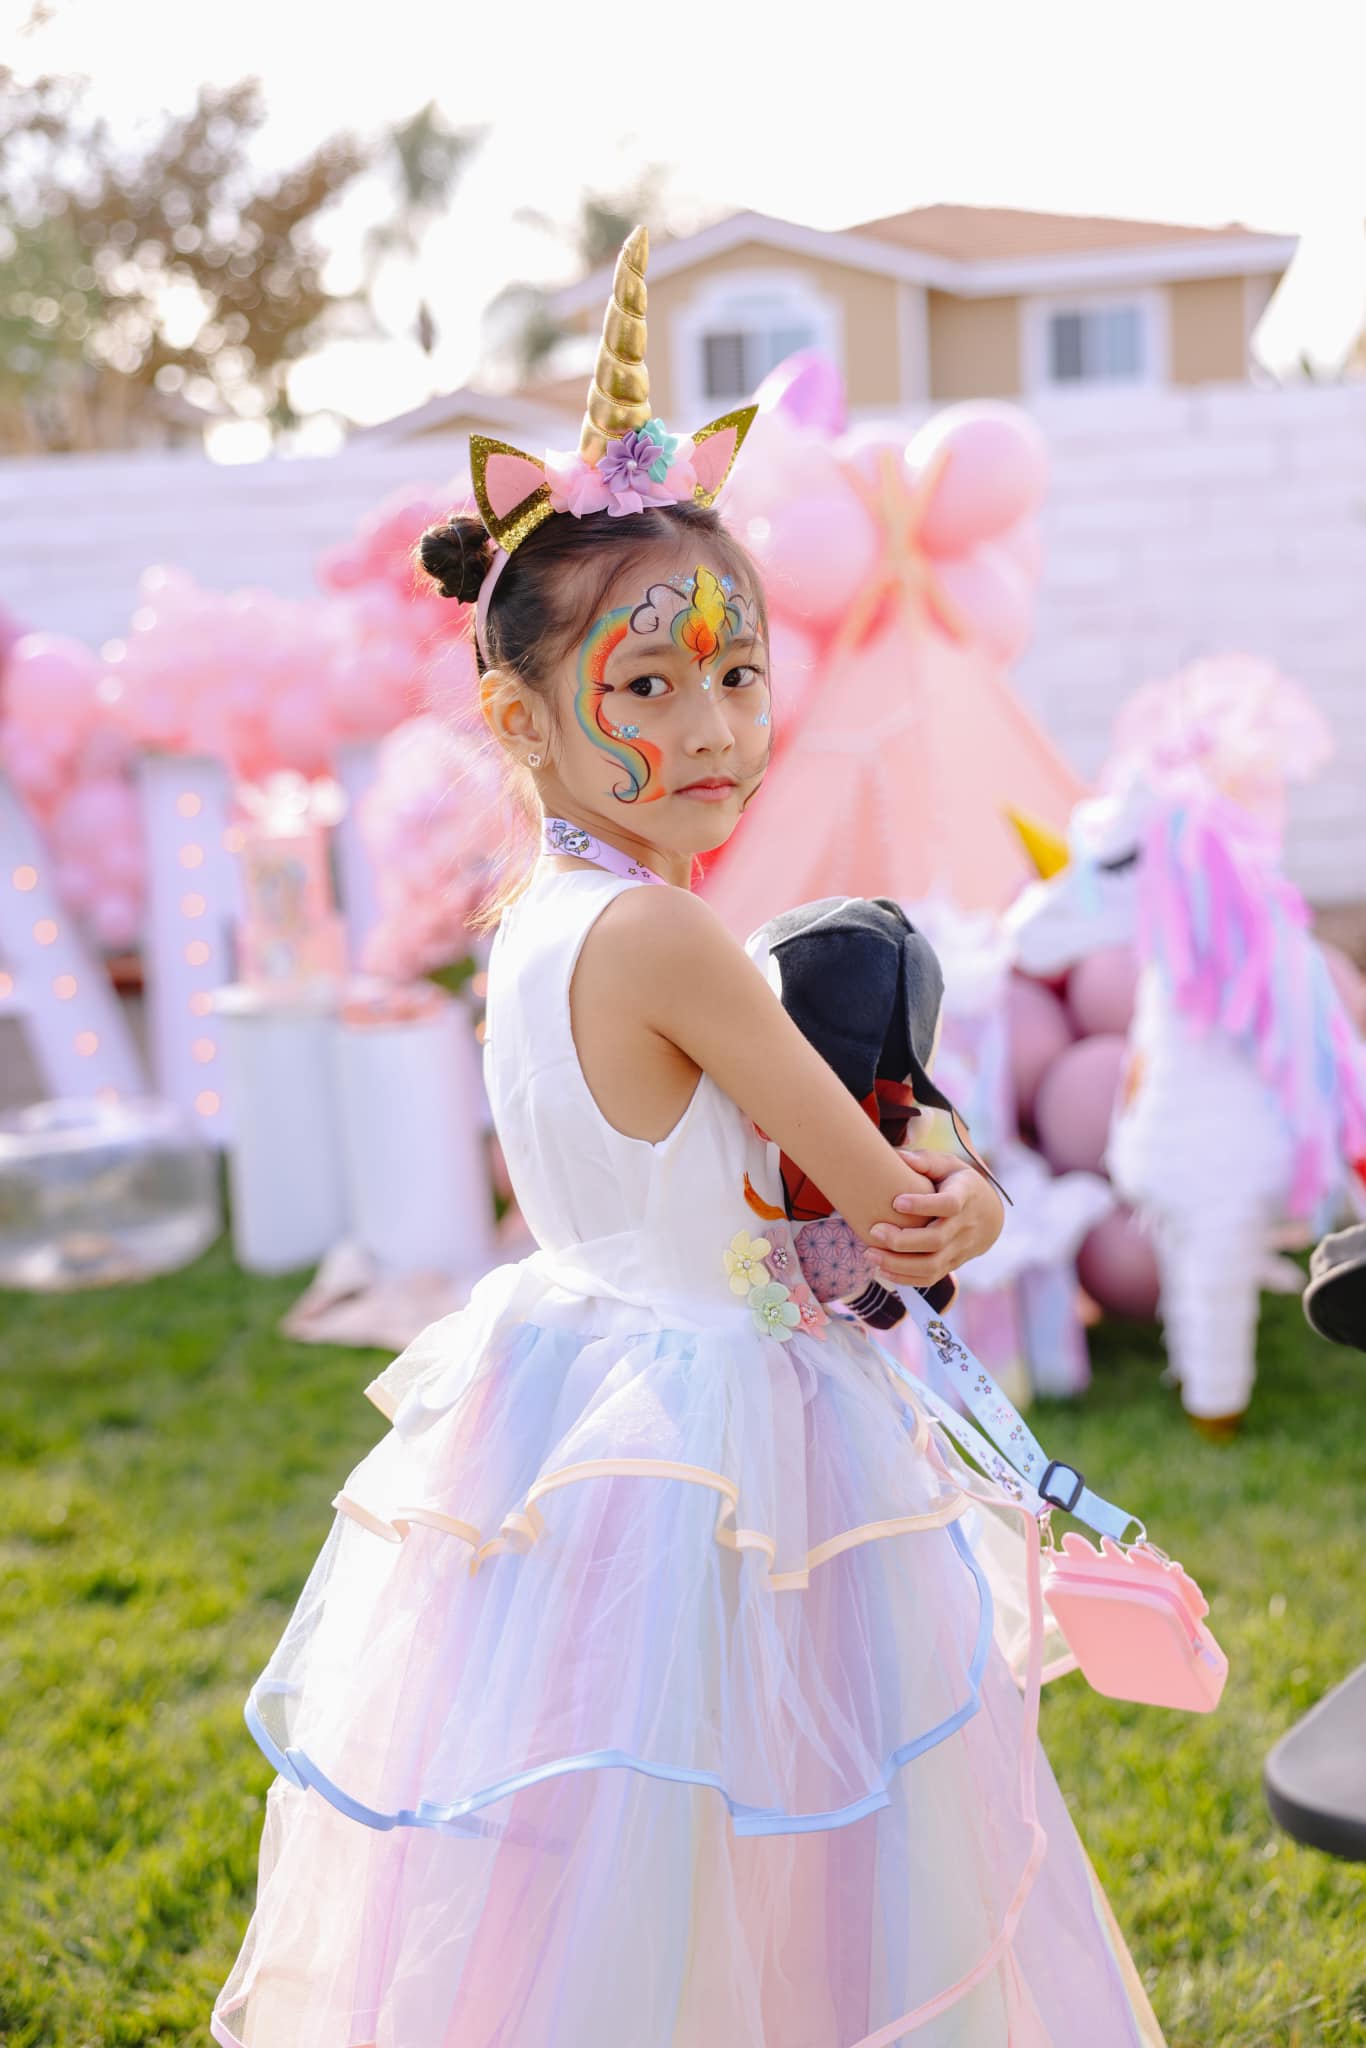 Con gái Hoa hậu Hà Kiều Anh 6 tuổi xinh như công chúa đời thực, sao Việt khen nức nở - 7